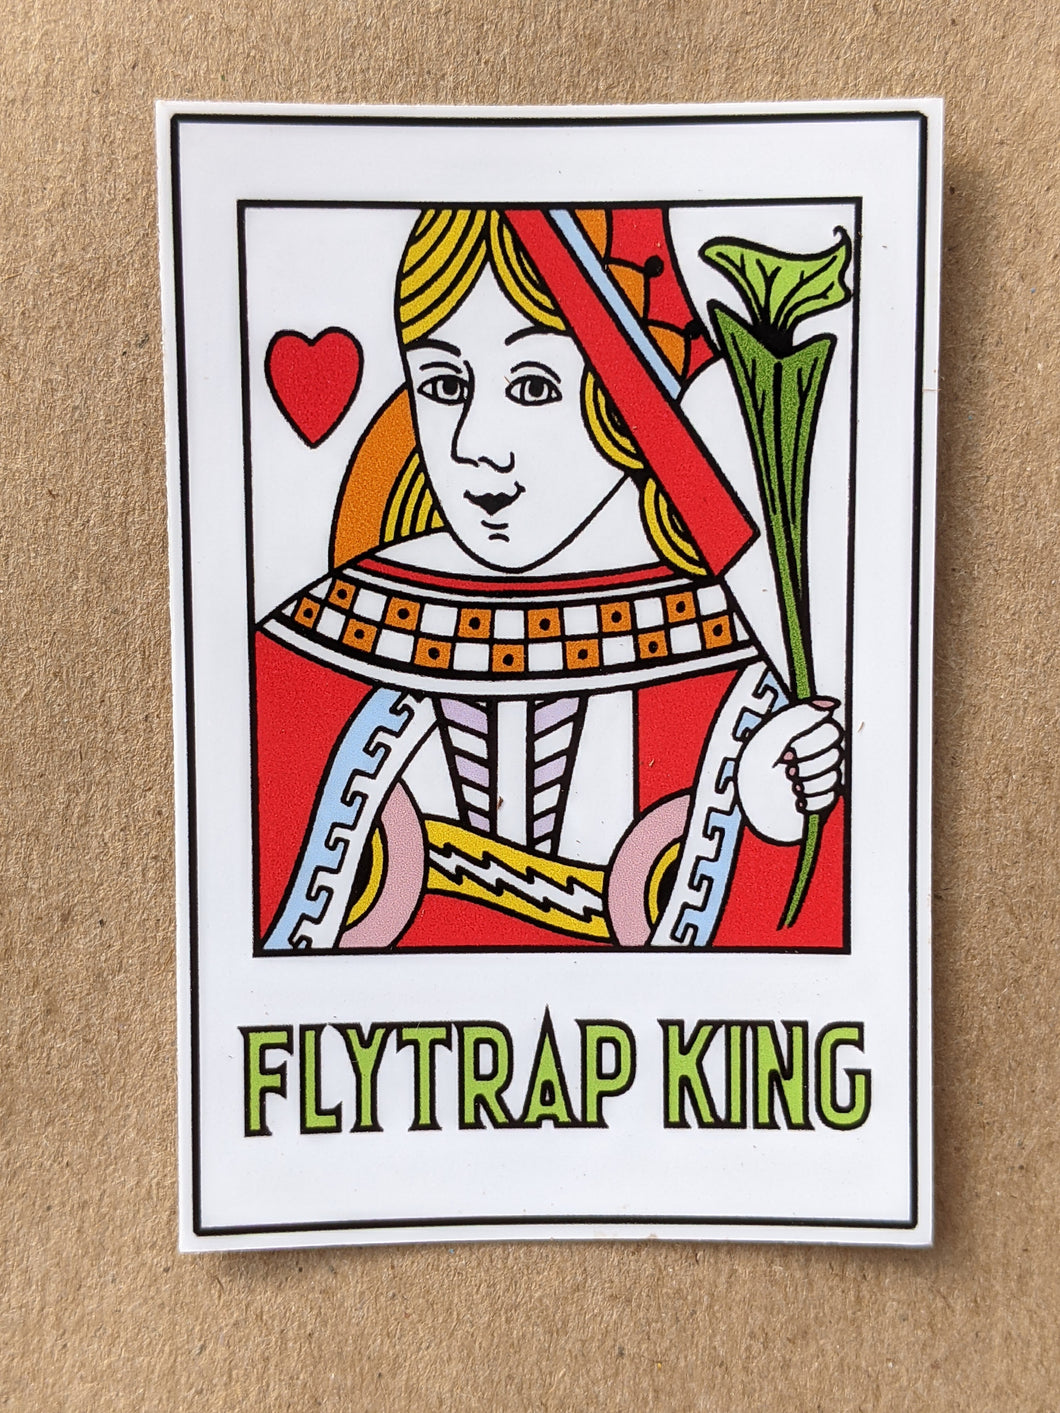 Queen of Flytraps, 2